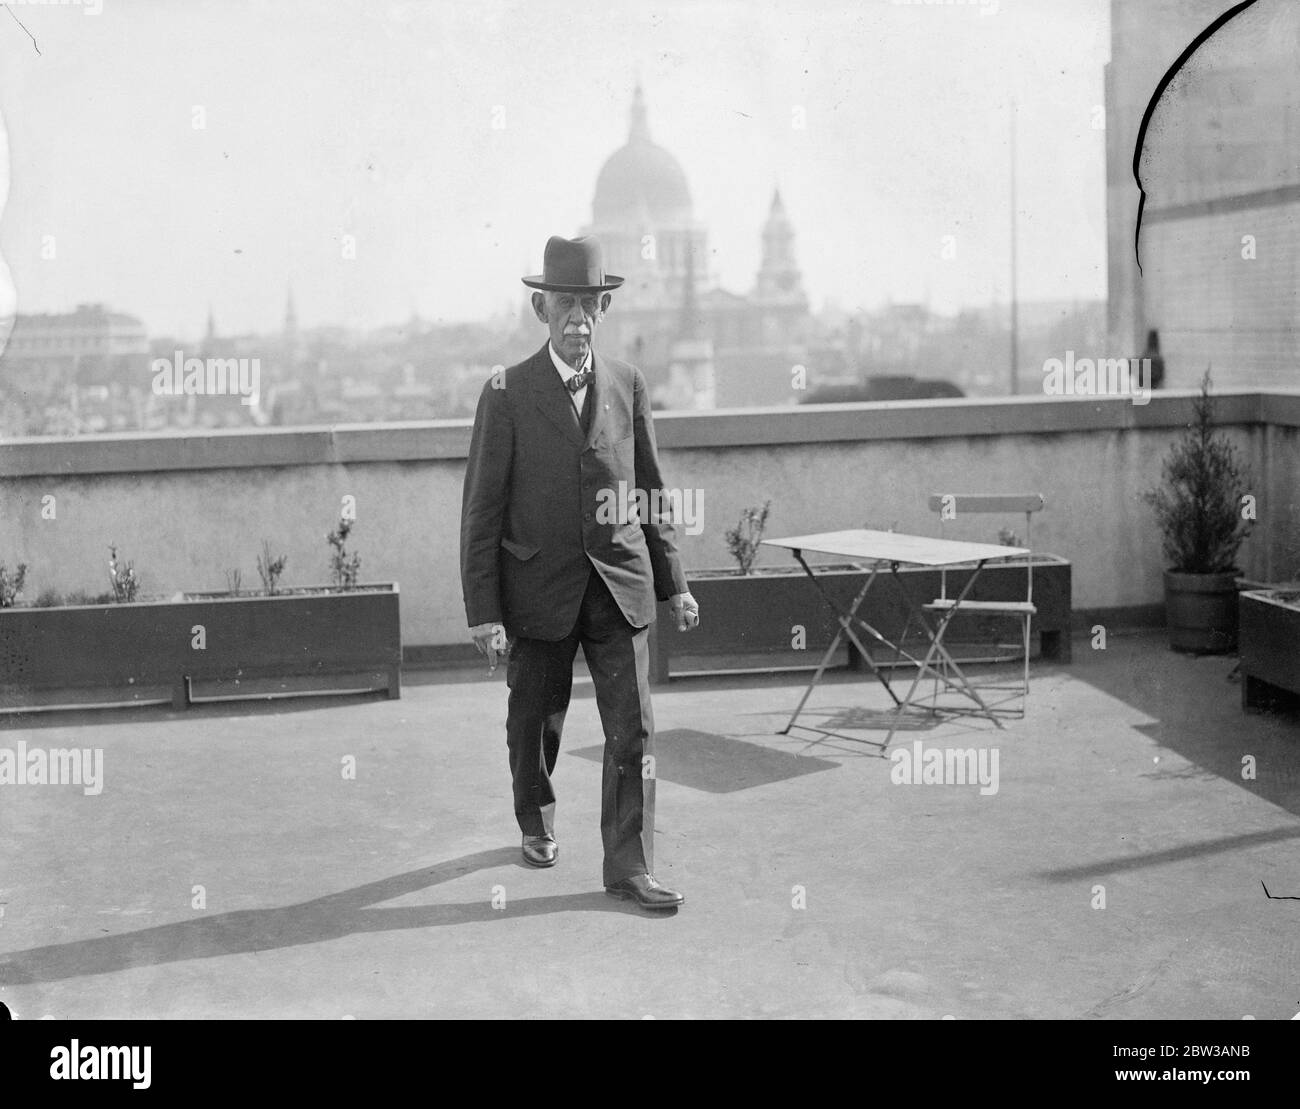 Le trotter américain de 76 ans arrive à Londres lors du quinzième voyage autour du monde . M. Julius Brittlebank photographié à Londres . 15 septembre 1934 Banque D'Images